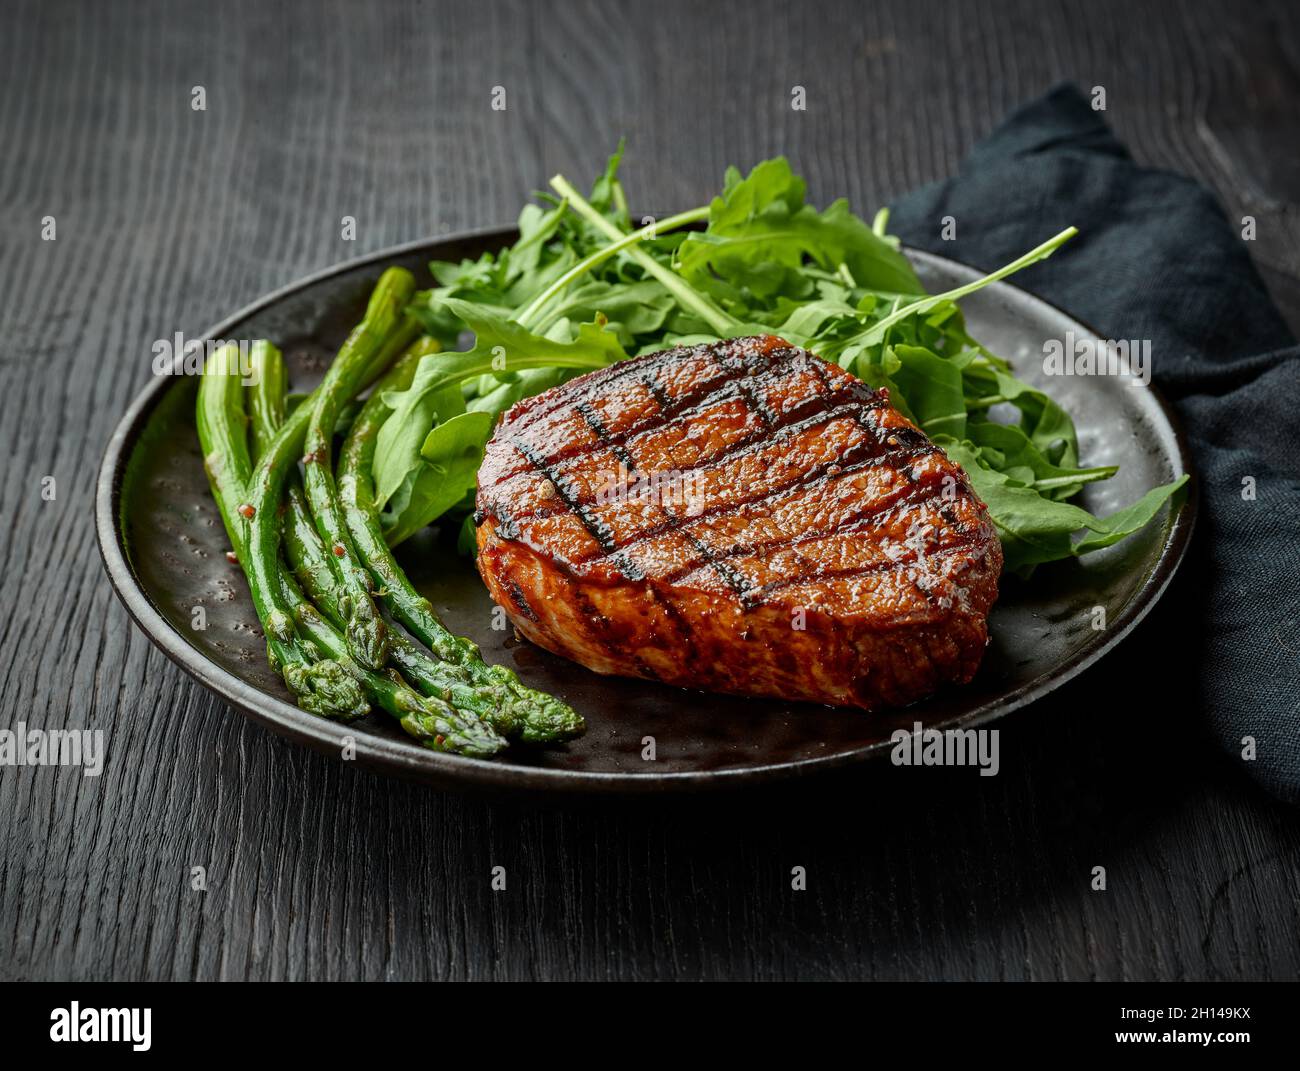 Steak de veau fraîchement cuit, asperges et arugula servis sur une assiette foncée Banque D'Images